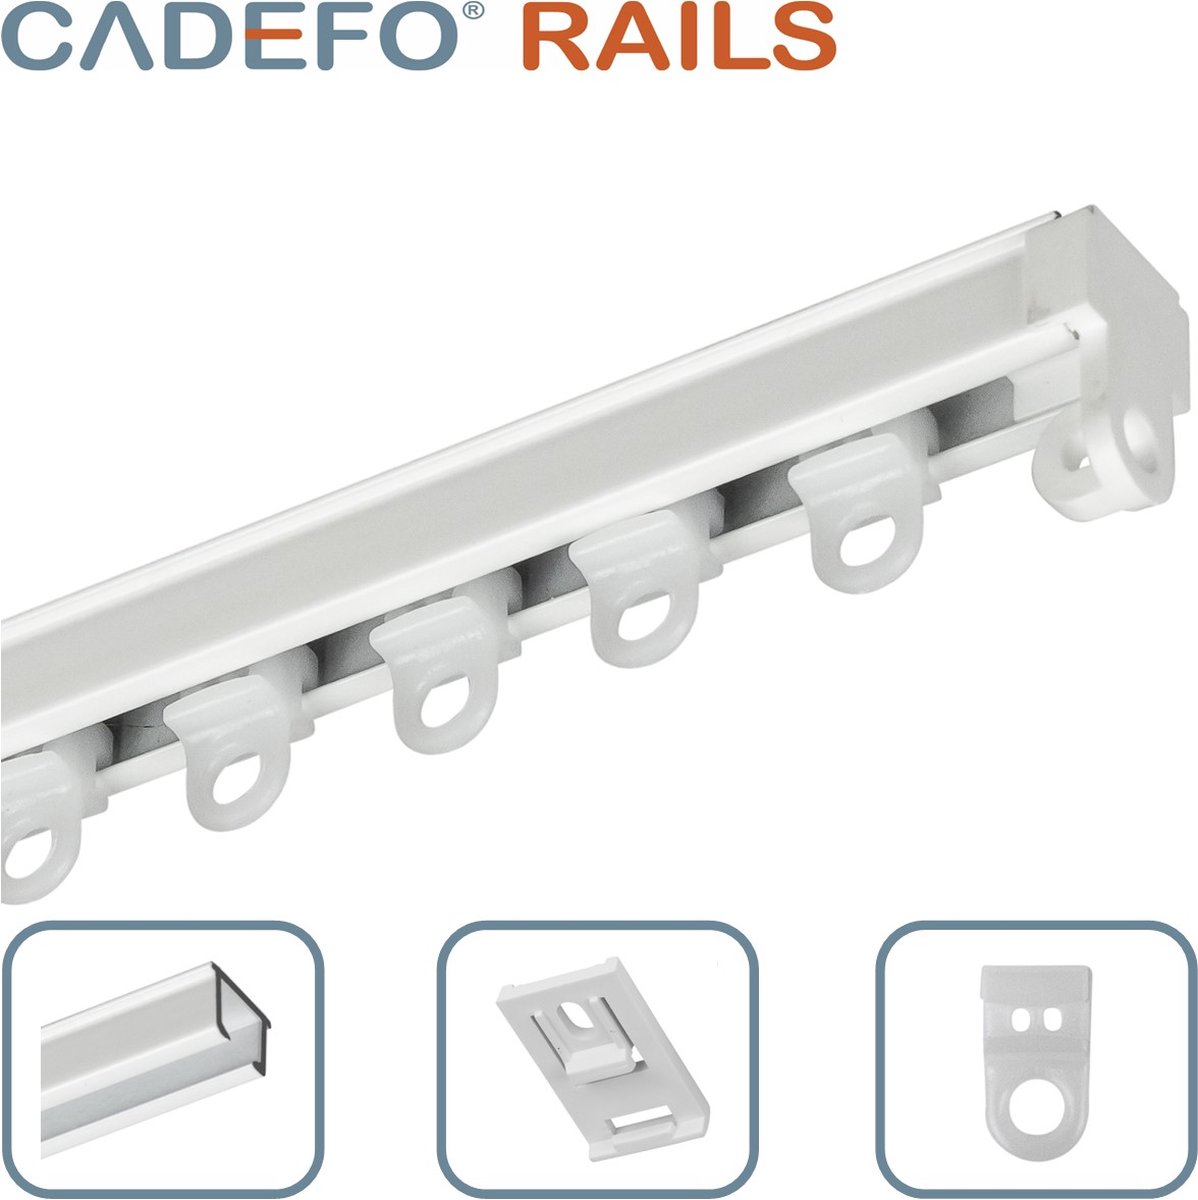 CADEFO RAILS (501 - 550 cm) Gordijnrails - Compleet op maat! - UIT 1 STUK - Leverbaar tot 6 meter - Plafondbevestiging - Lengte 524 cm